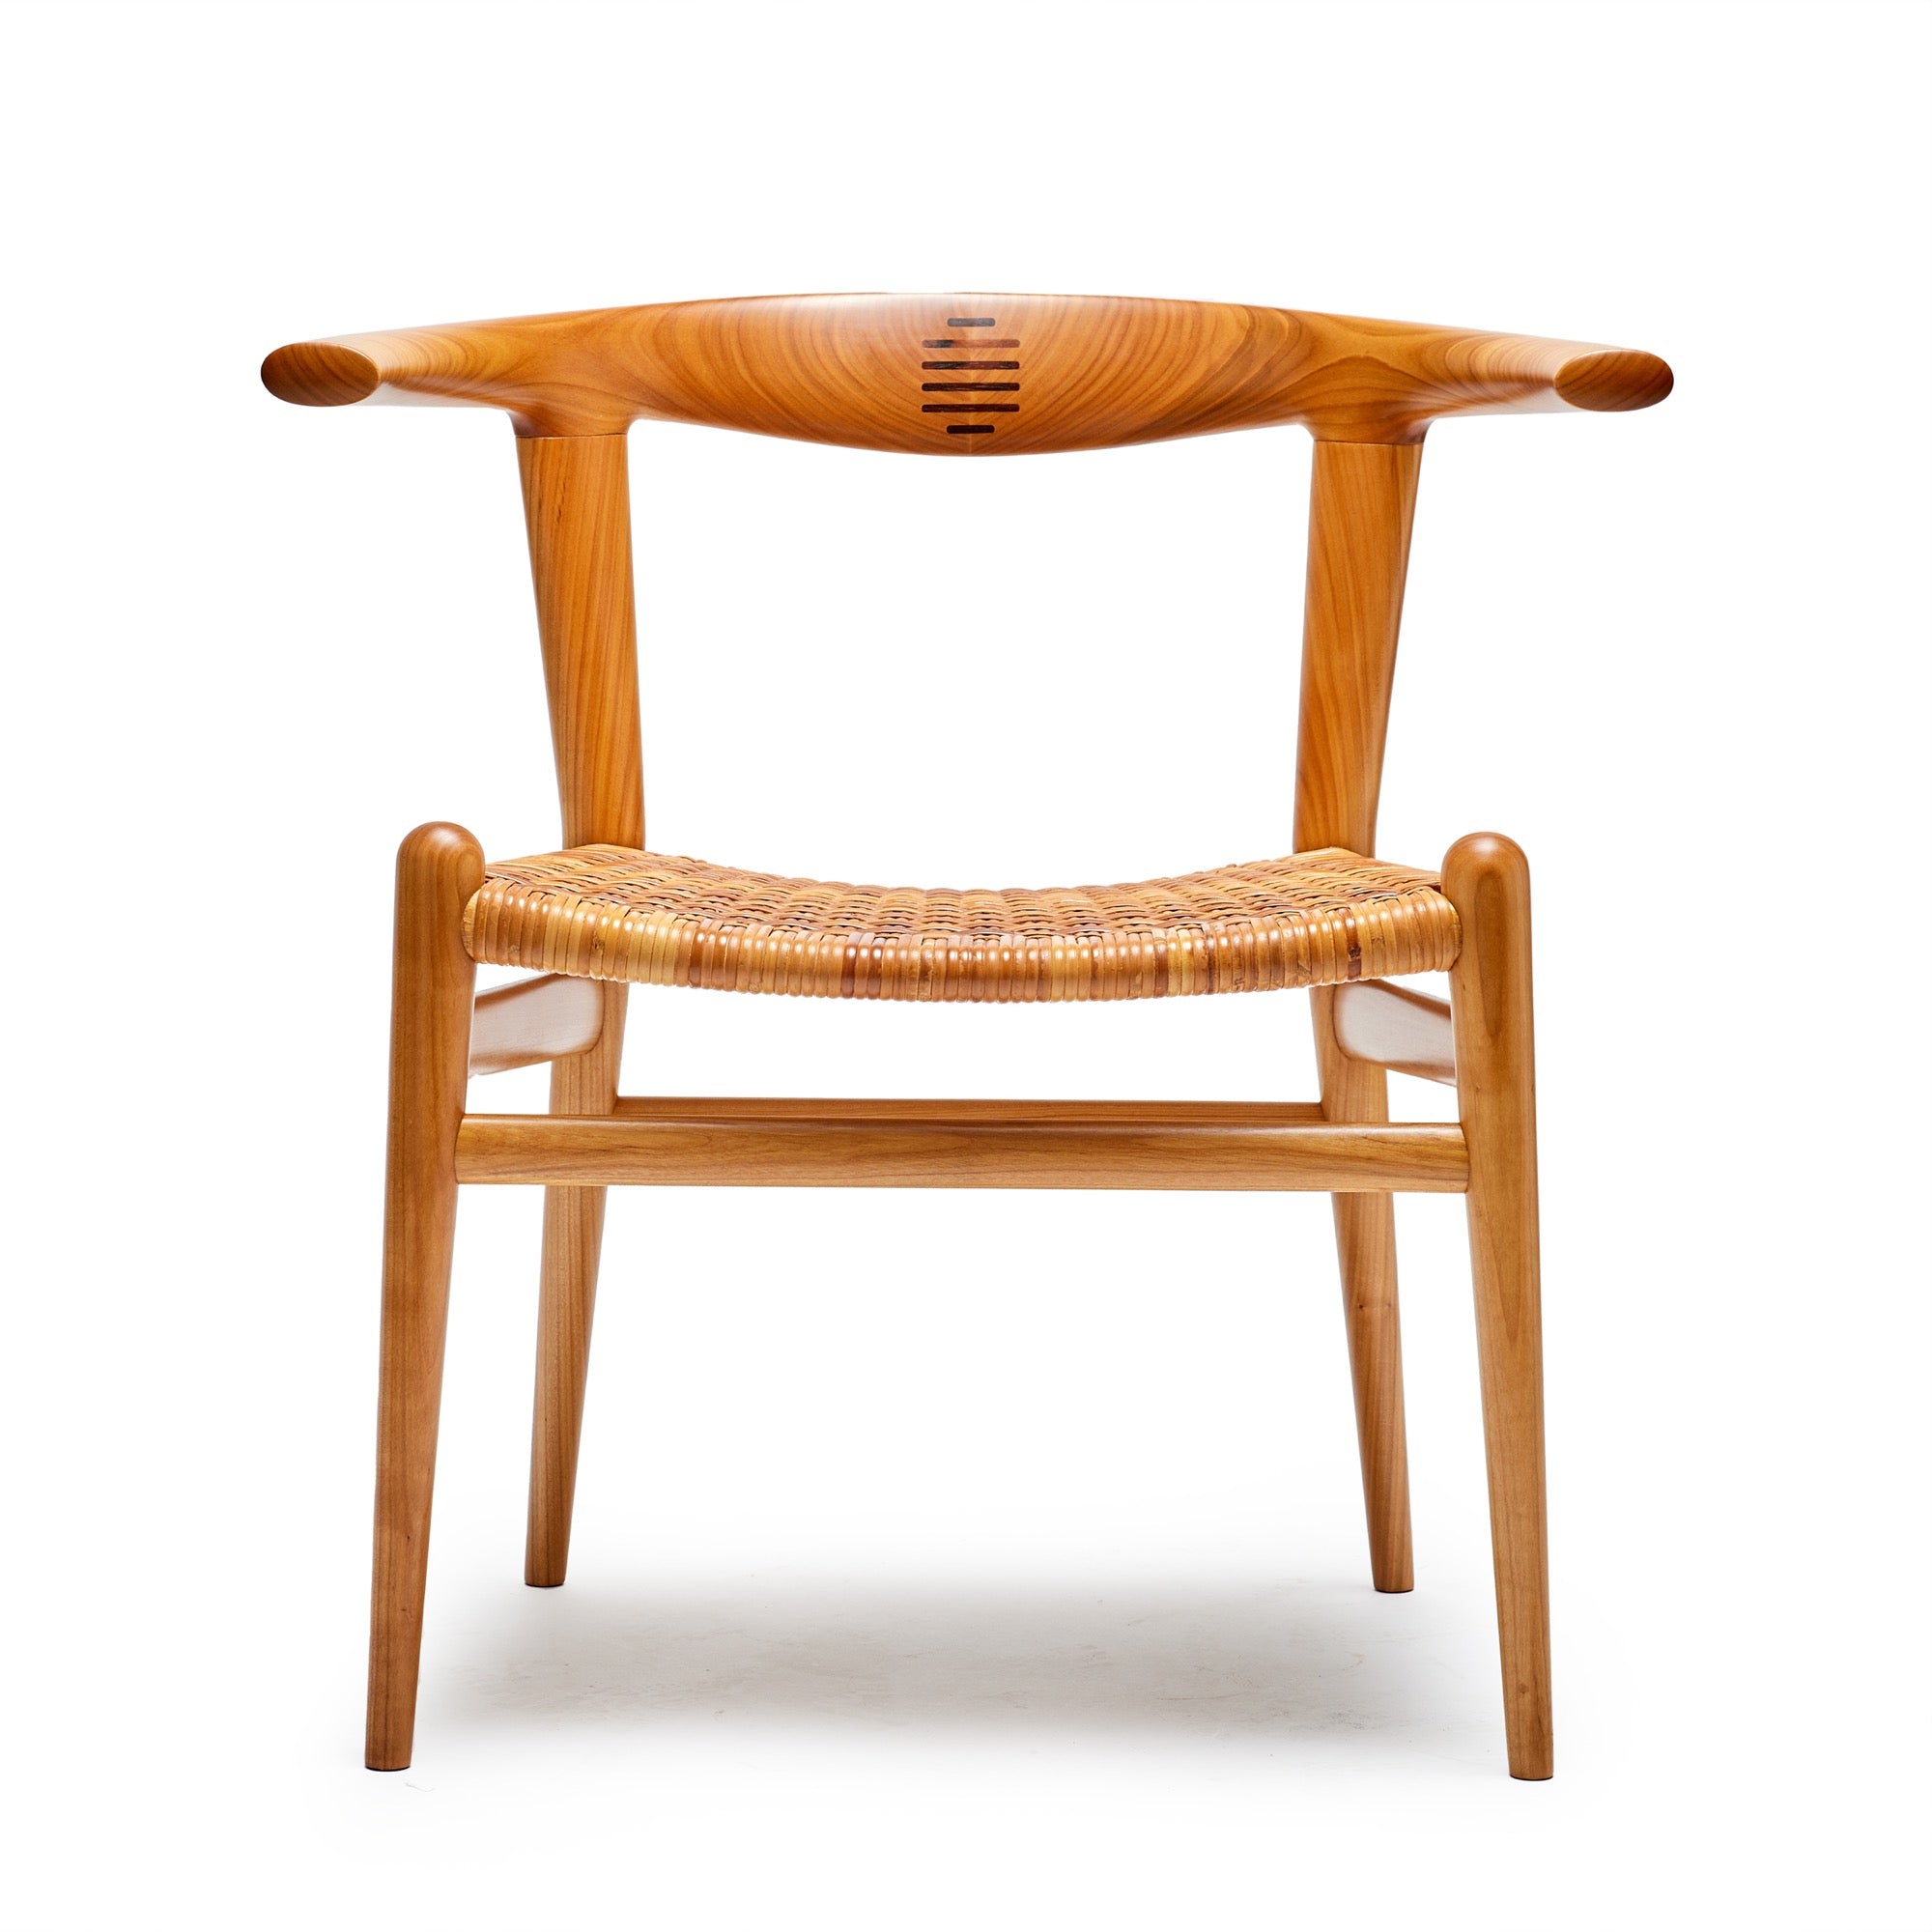 Cherry "Bullhorn" Dining Chair by Hans J. Wegner for PP Mobler, 1955